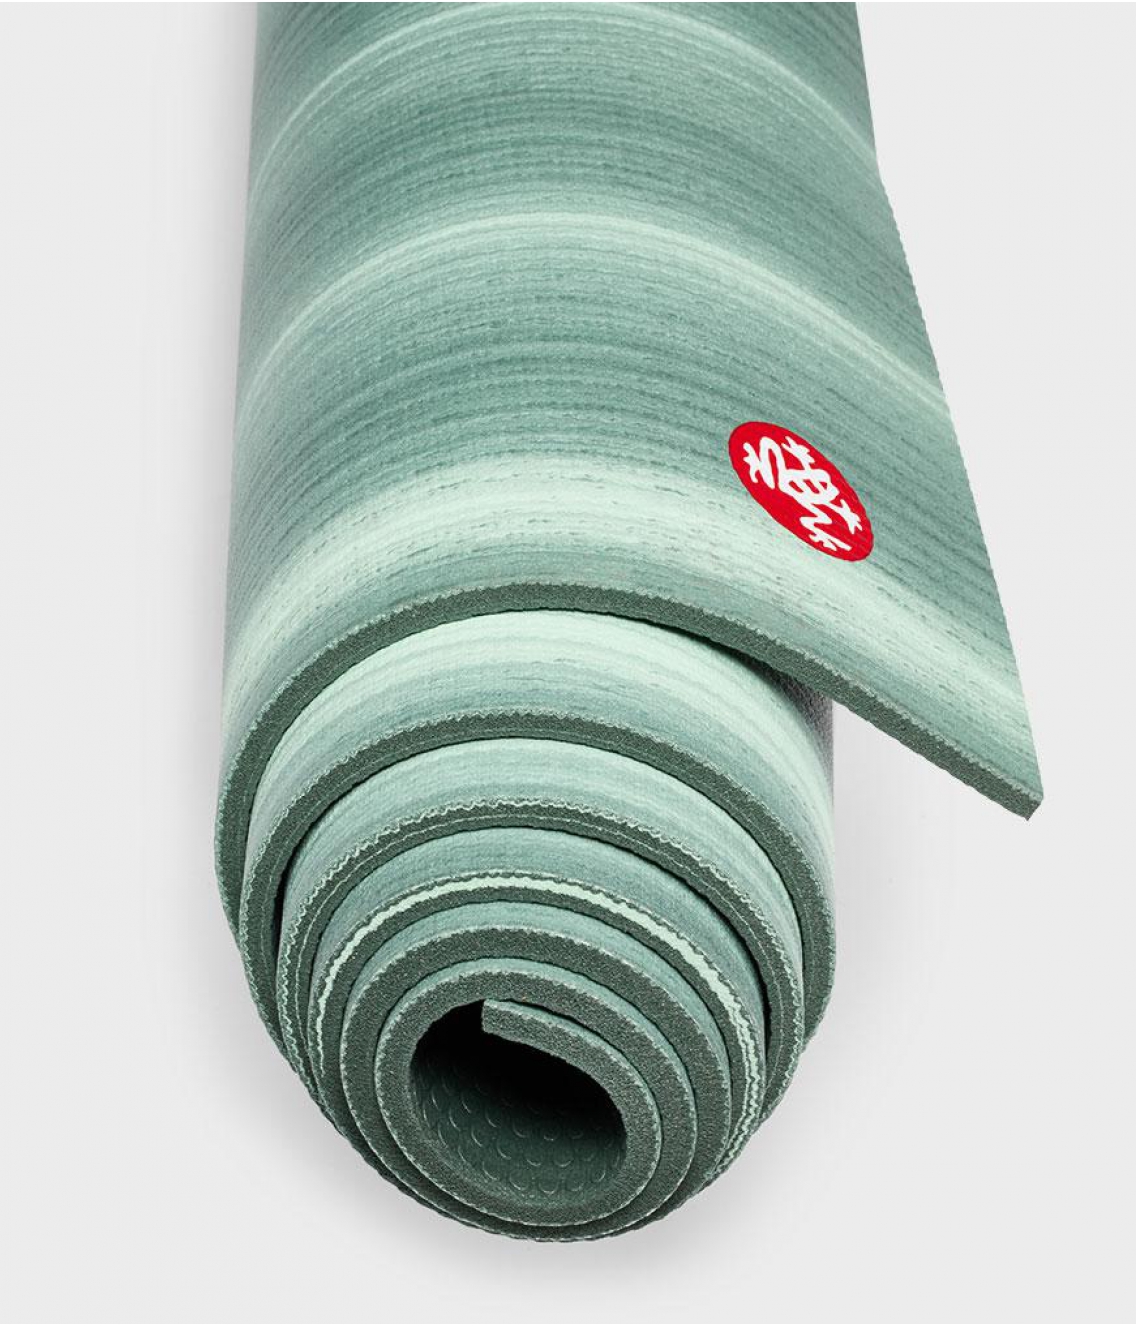 Профессиональный коврик для йоги из ПВХ Manduka The PRO Mat 180*66*0,6 см - Green Ash (Limited Edition)